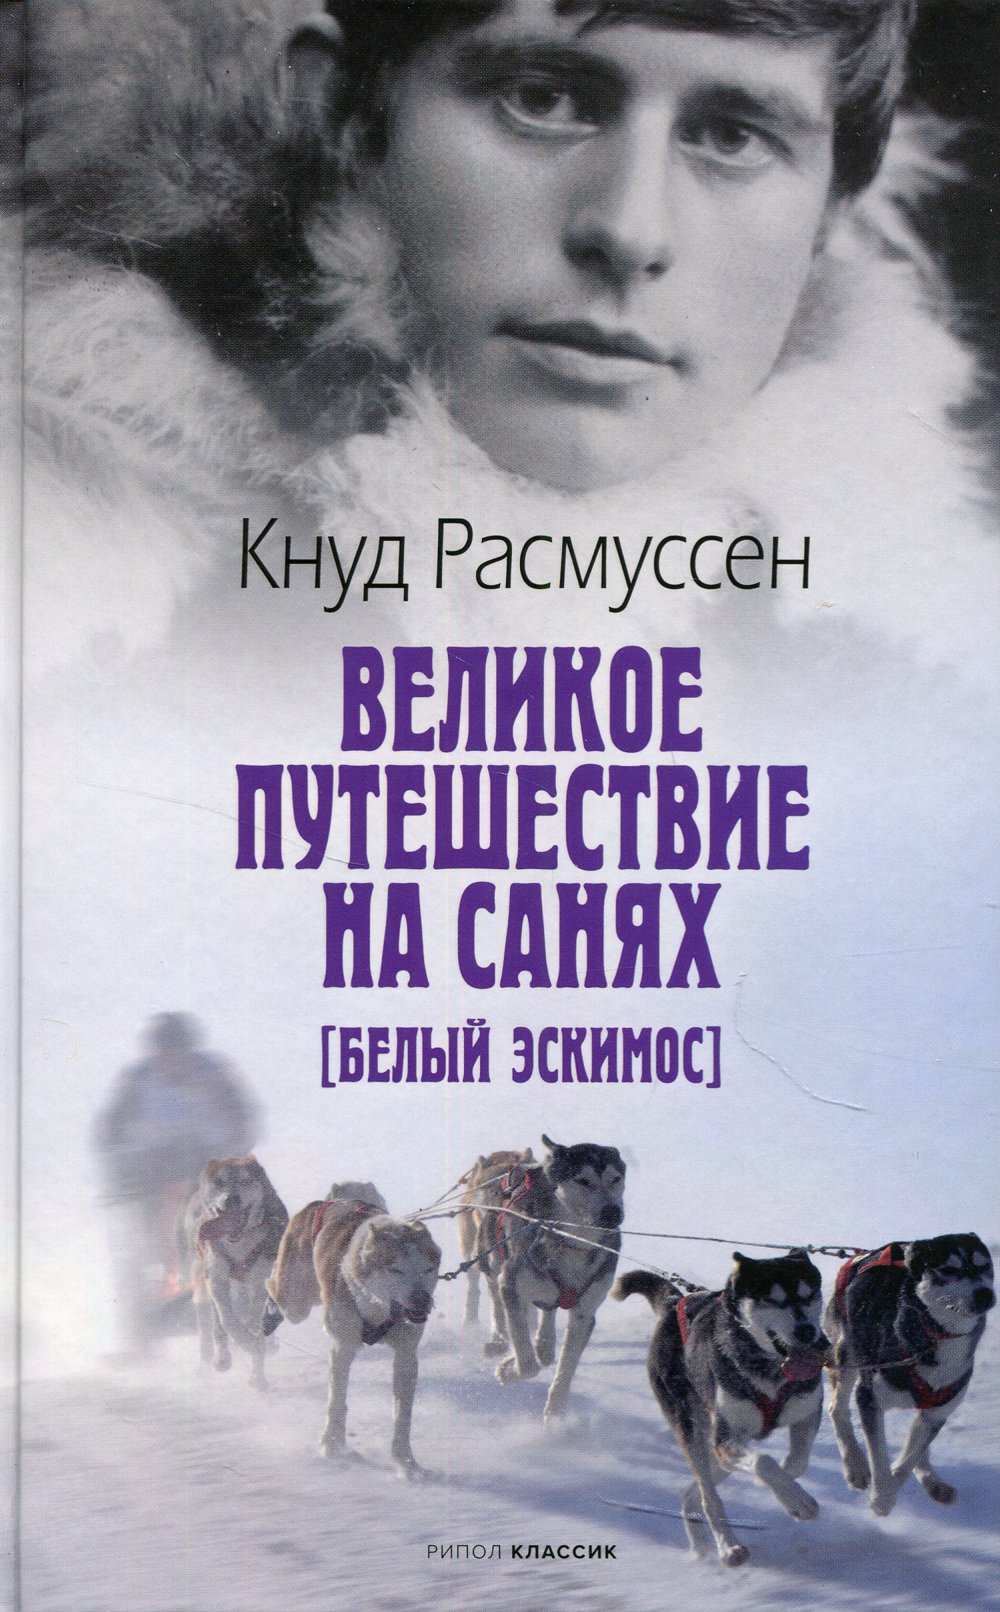 Zakazat.ru: Великое путешествие на санях. Белый эскимос. Расмуссен К.